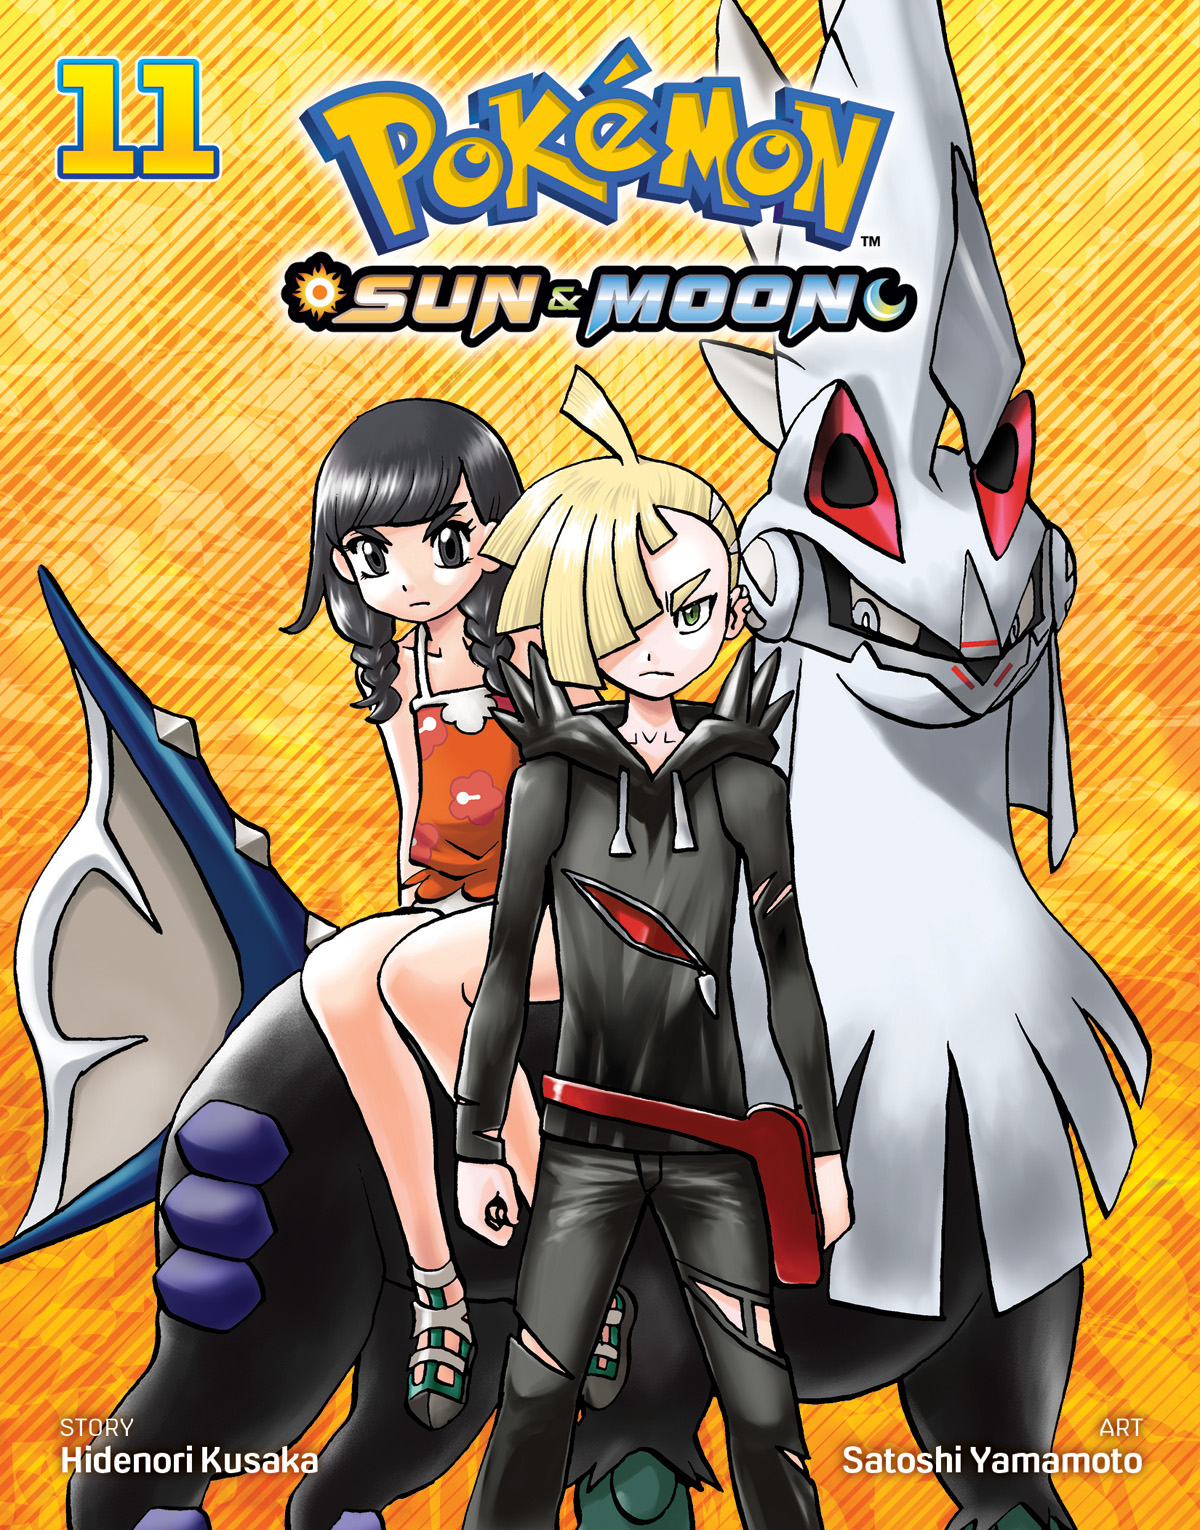 Pokémon Sun & Moon Manga Volume 11